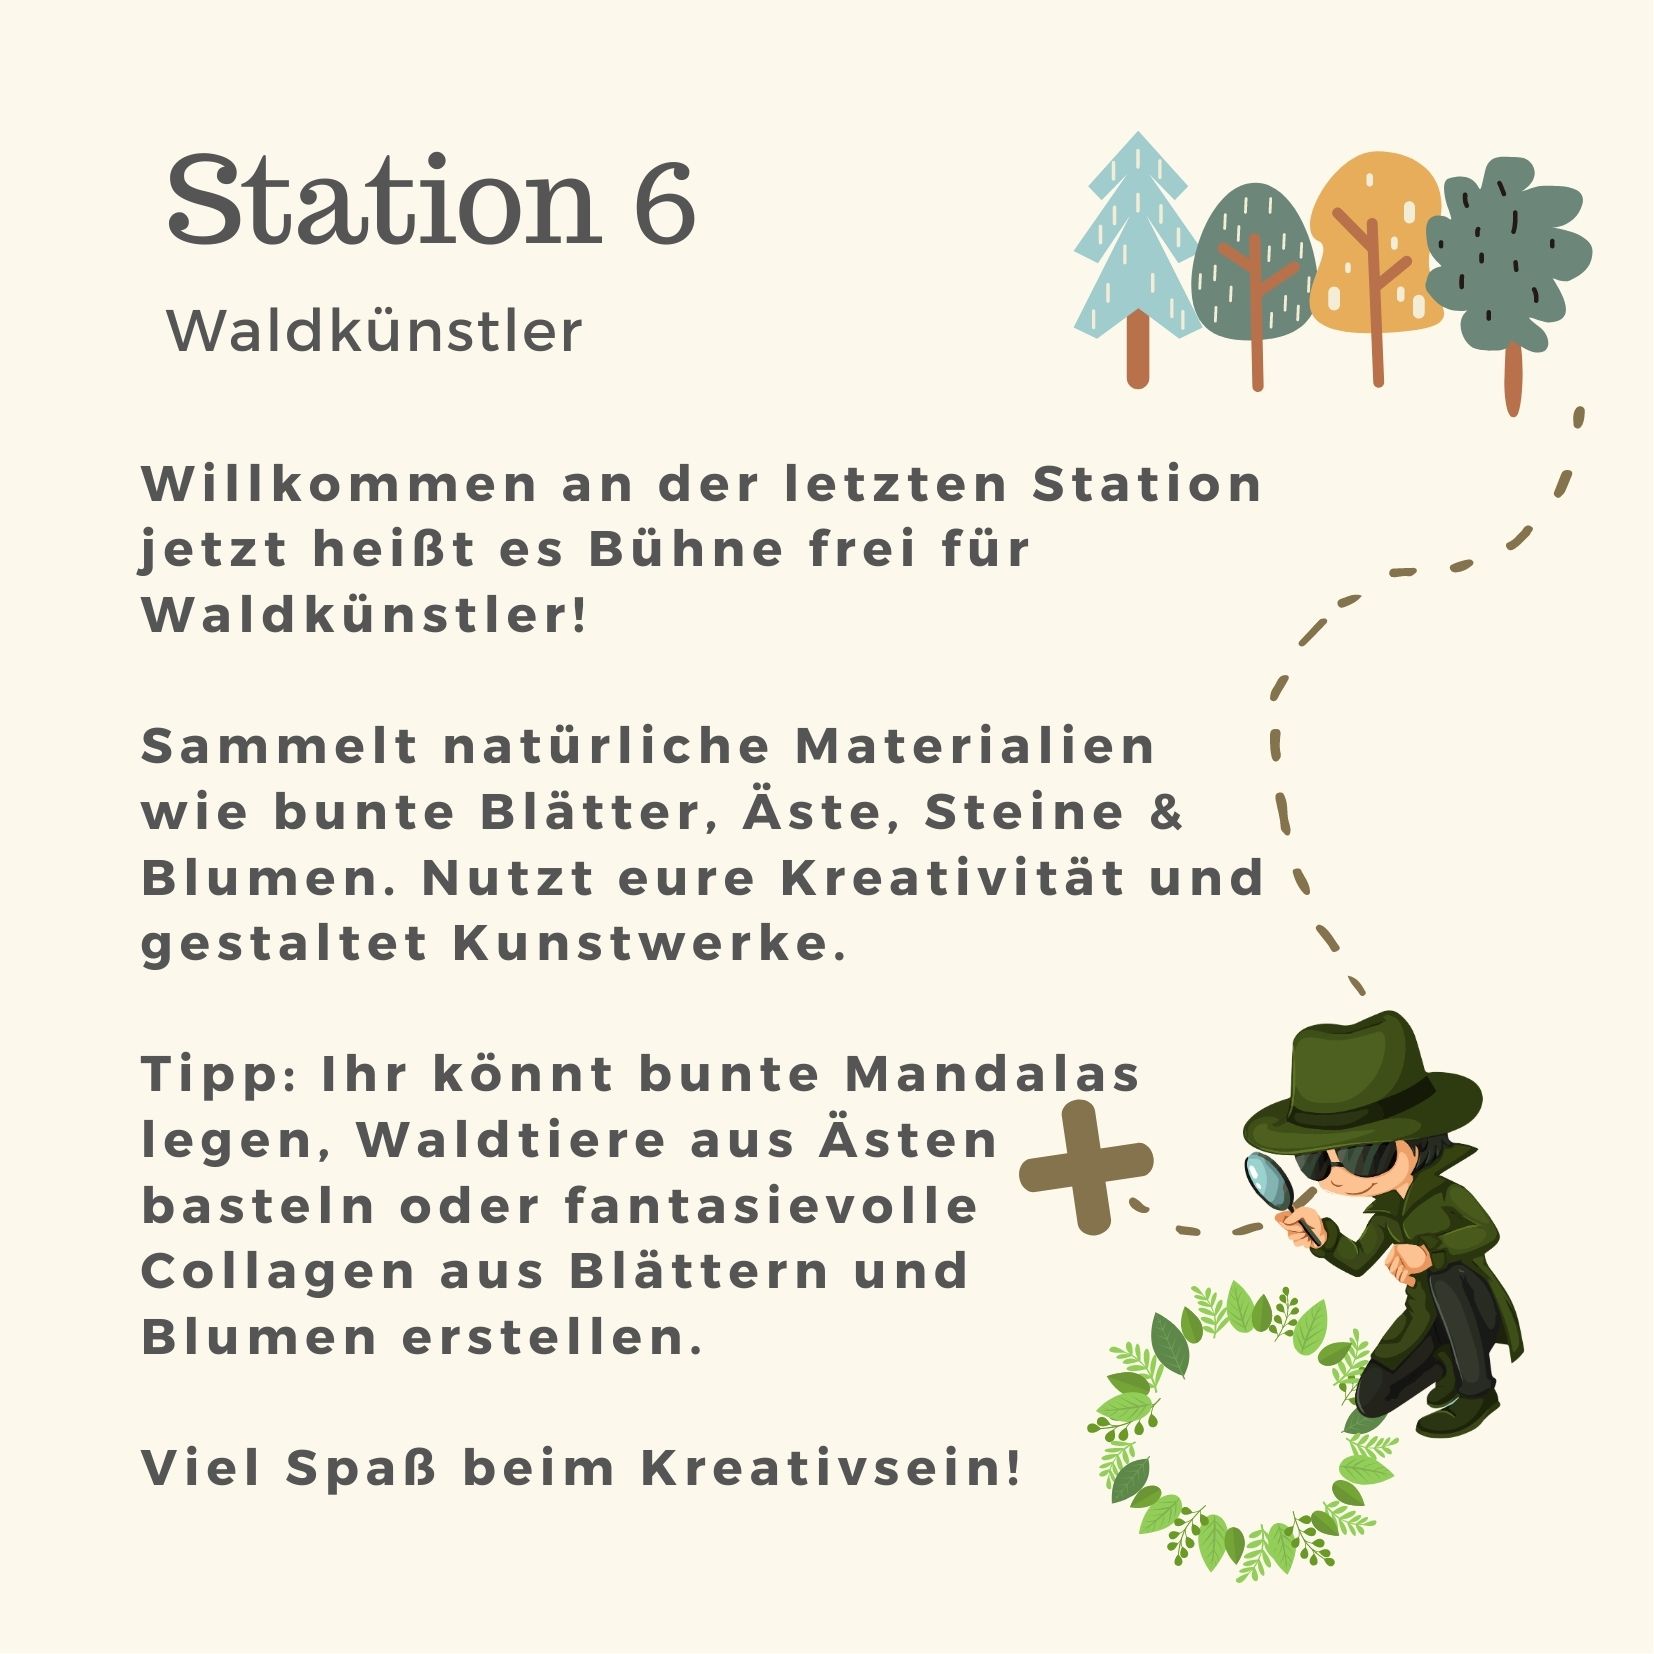 Station 6 - Waldkünstler (Waldschatzsuche)